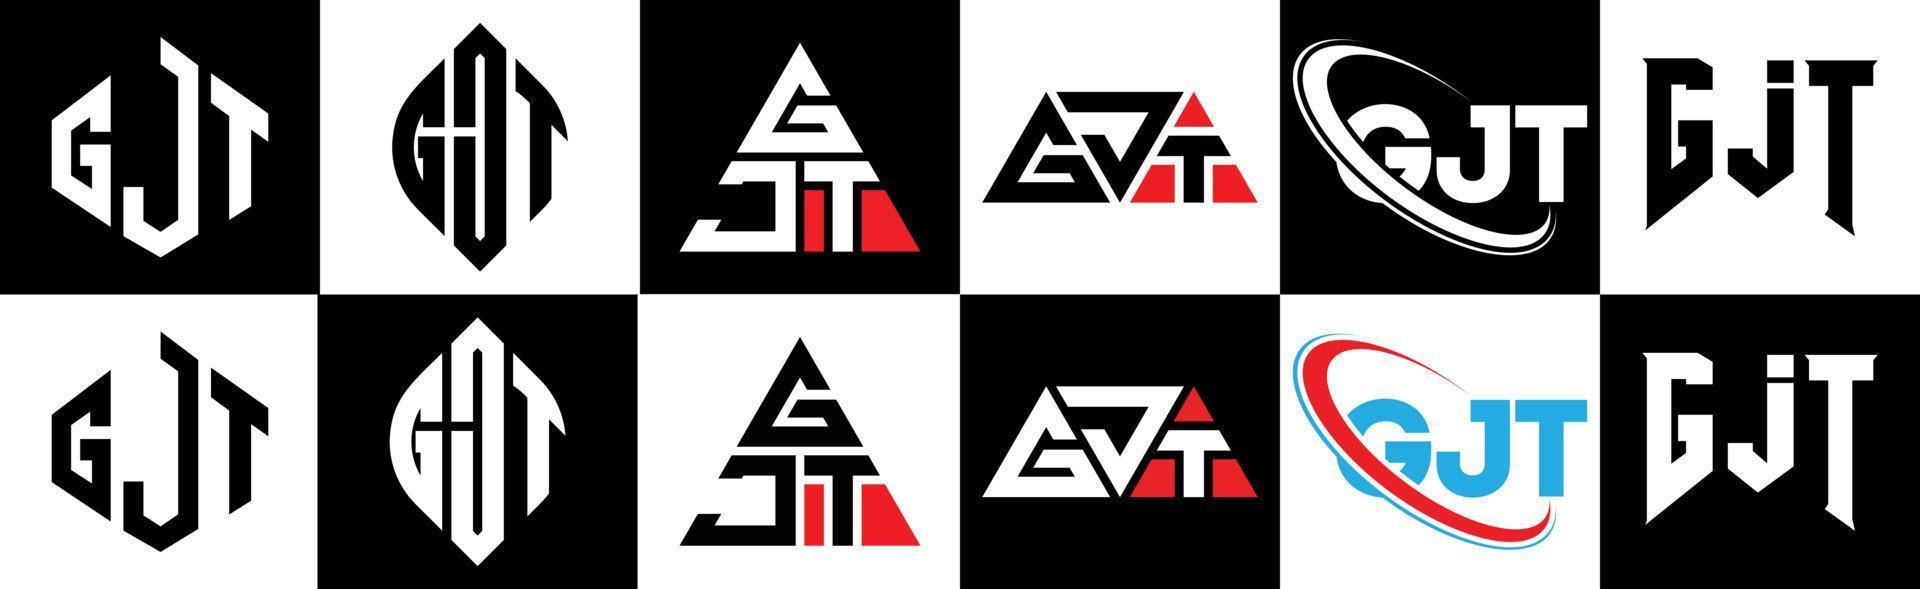 création de logo de lettre gjt en six styles. polygone gjt, cercle, triangle, hexagone, style plat et simple avec logo de lettre de variation de couleur noir et blanc dans un plan de travail. logo gjt minimaliste et classique vecteur